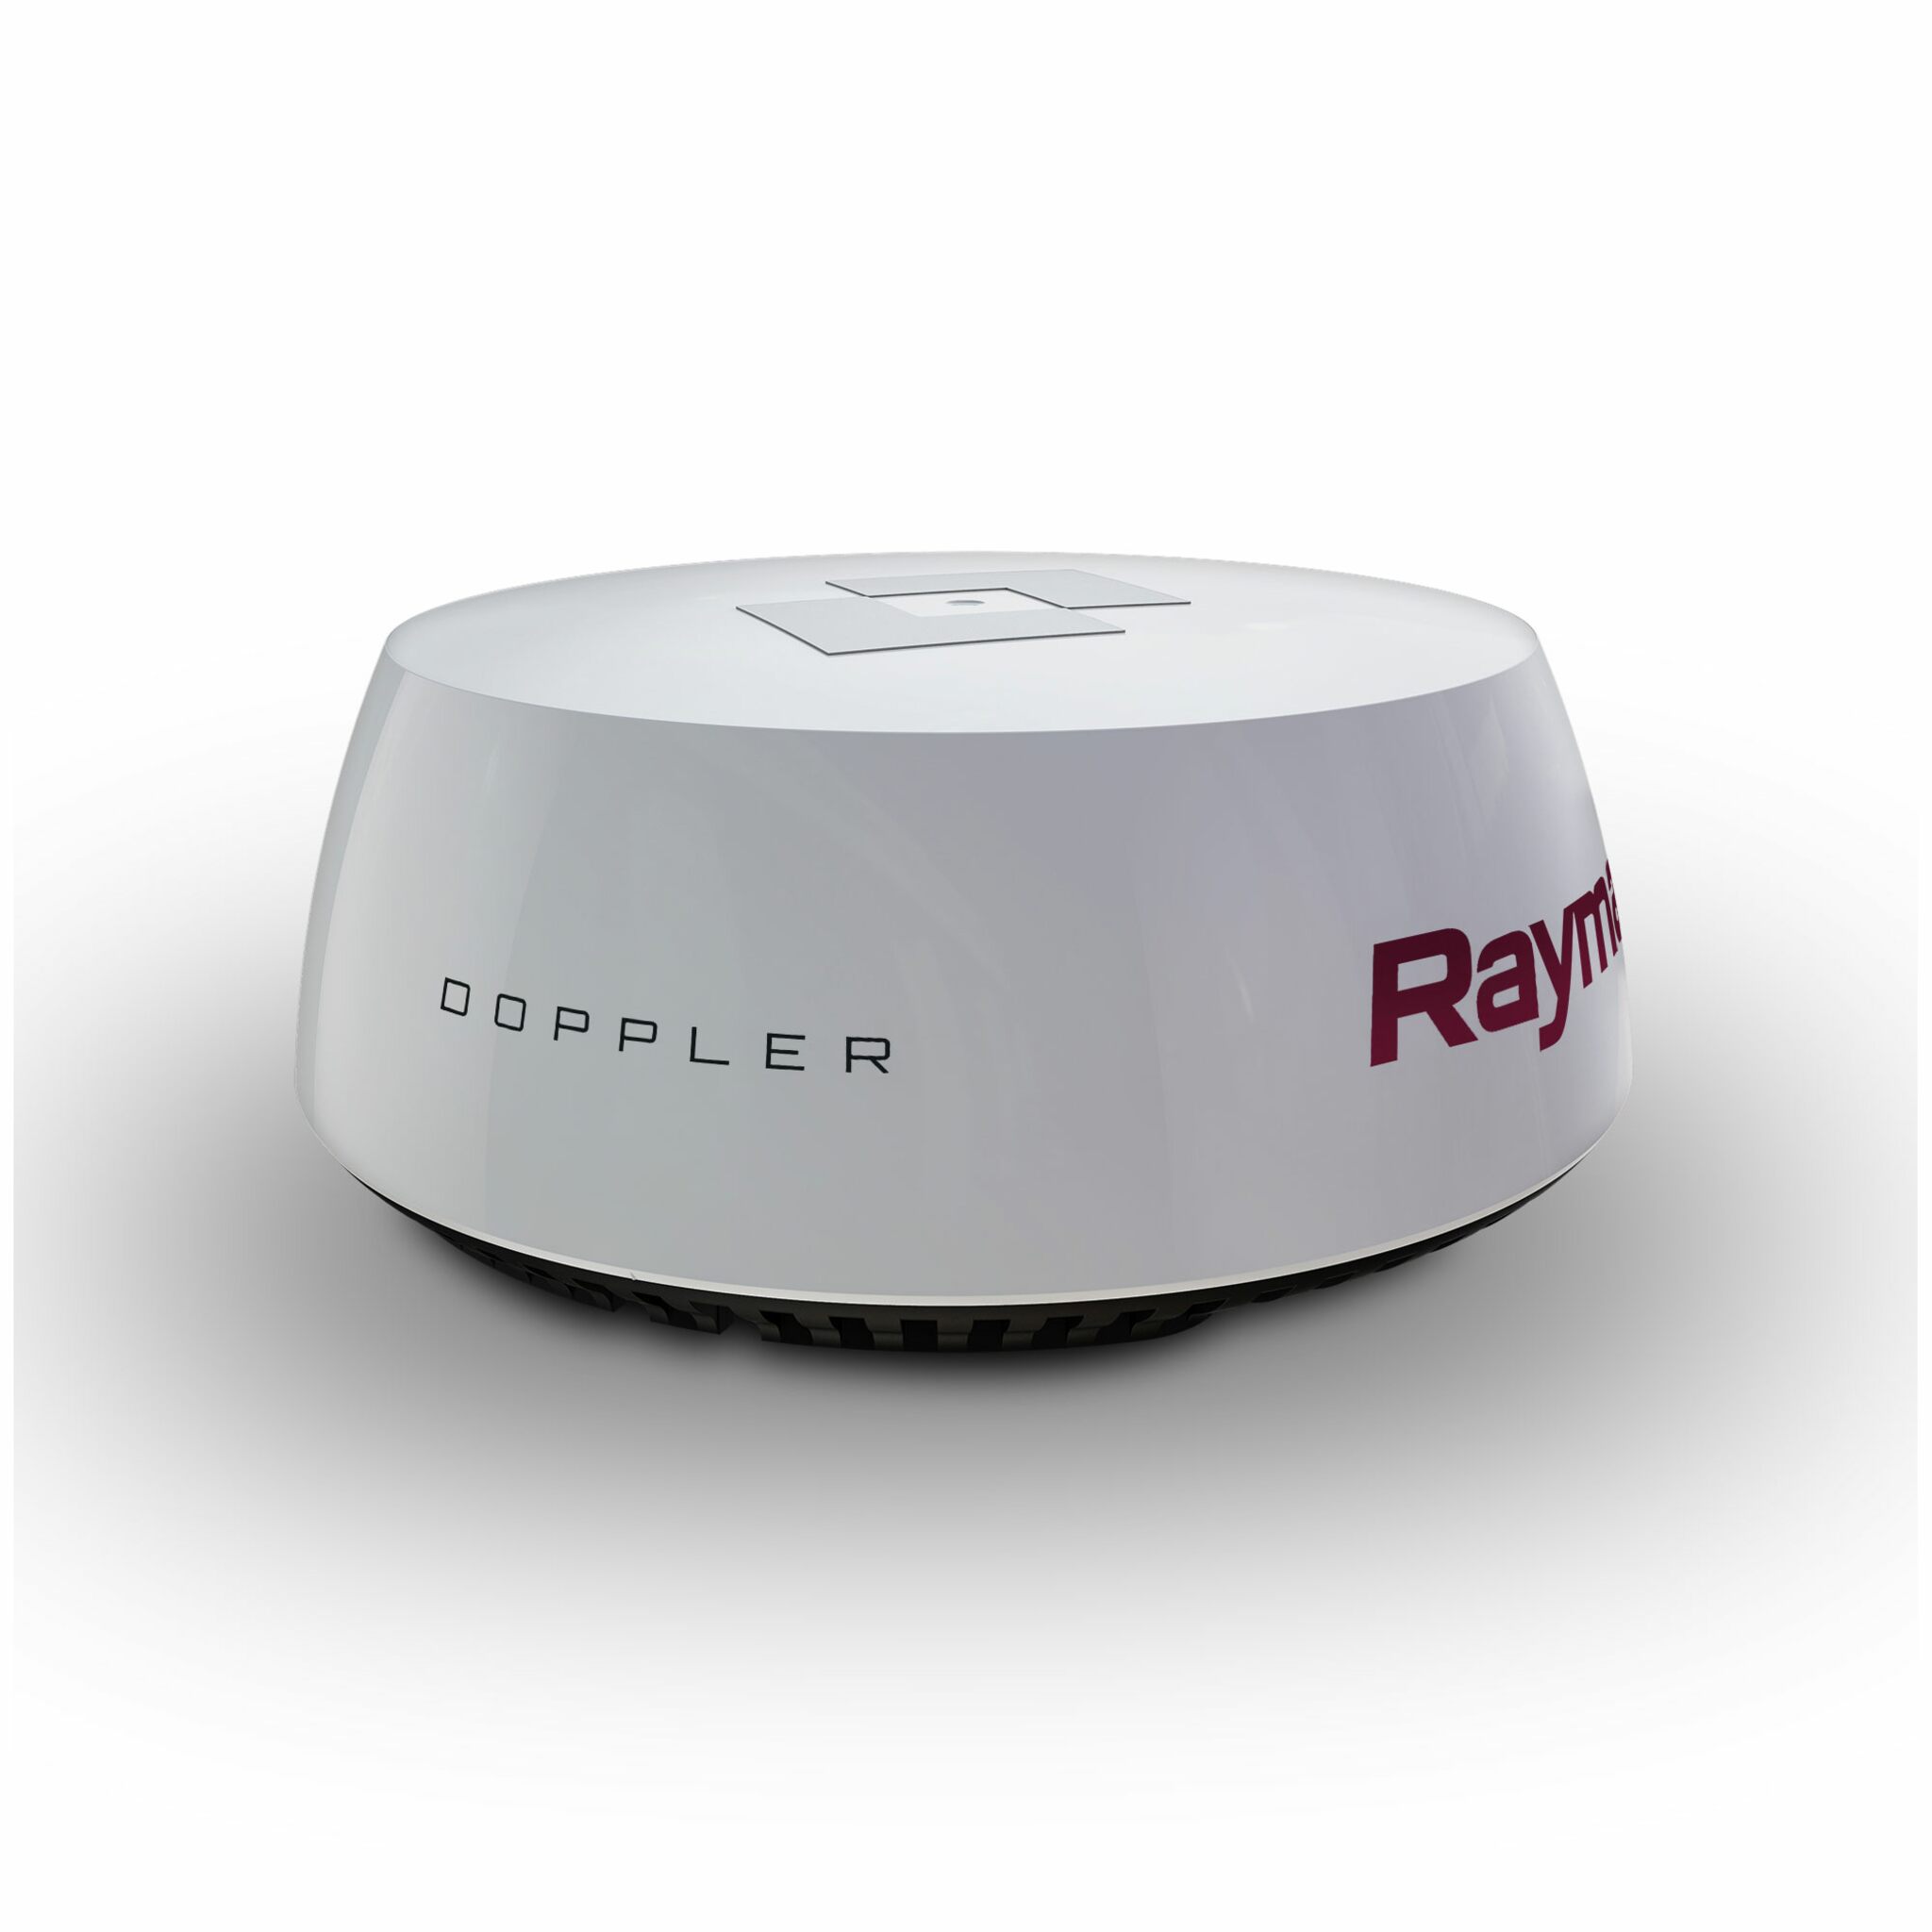 Raymarine Quantum 2 Q24D (Doppler), inkl. 10-m-Strom- und Datenkabel